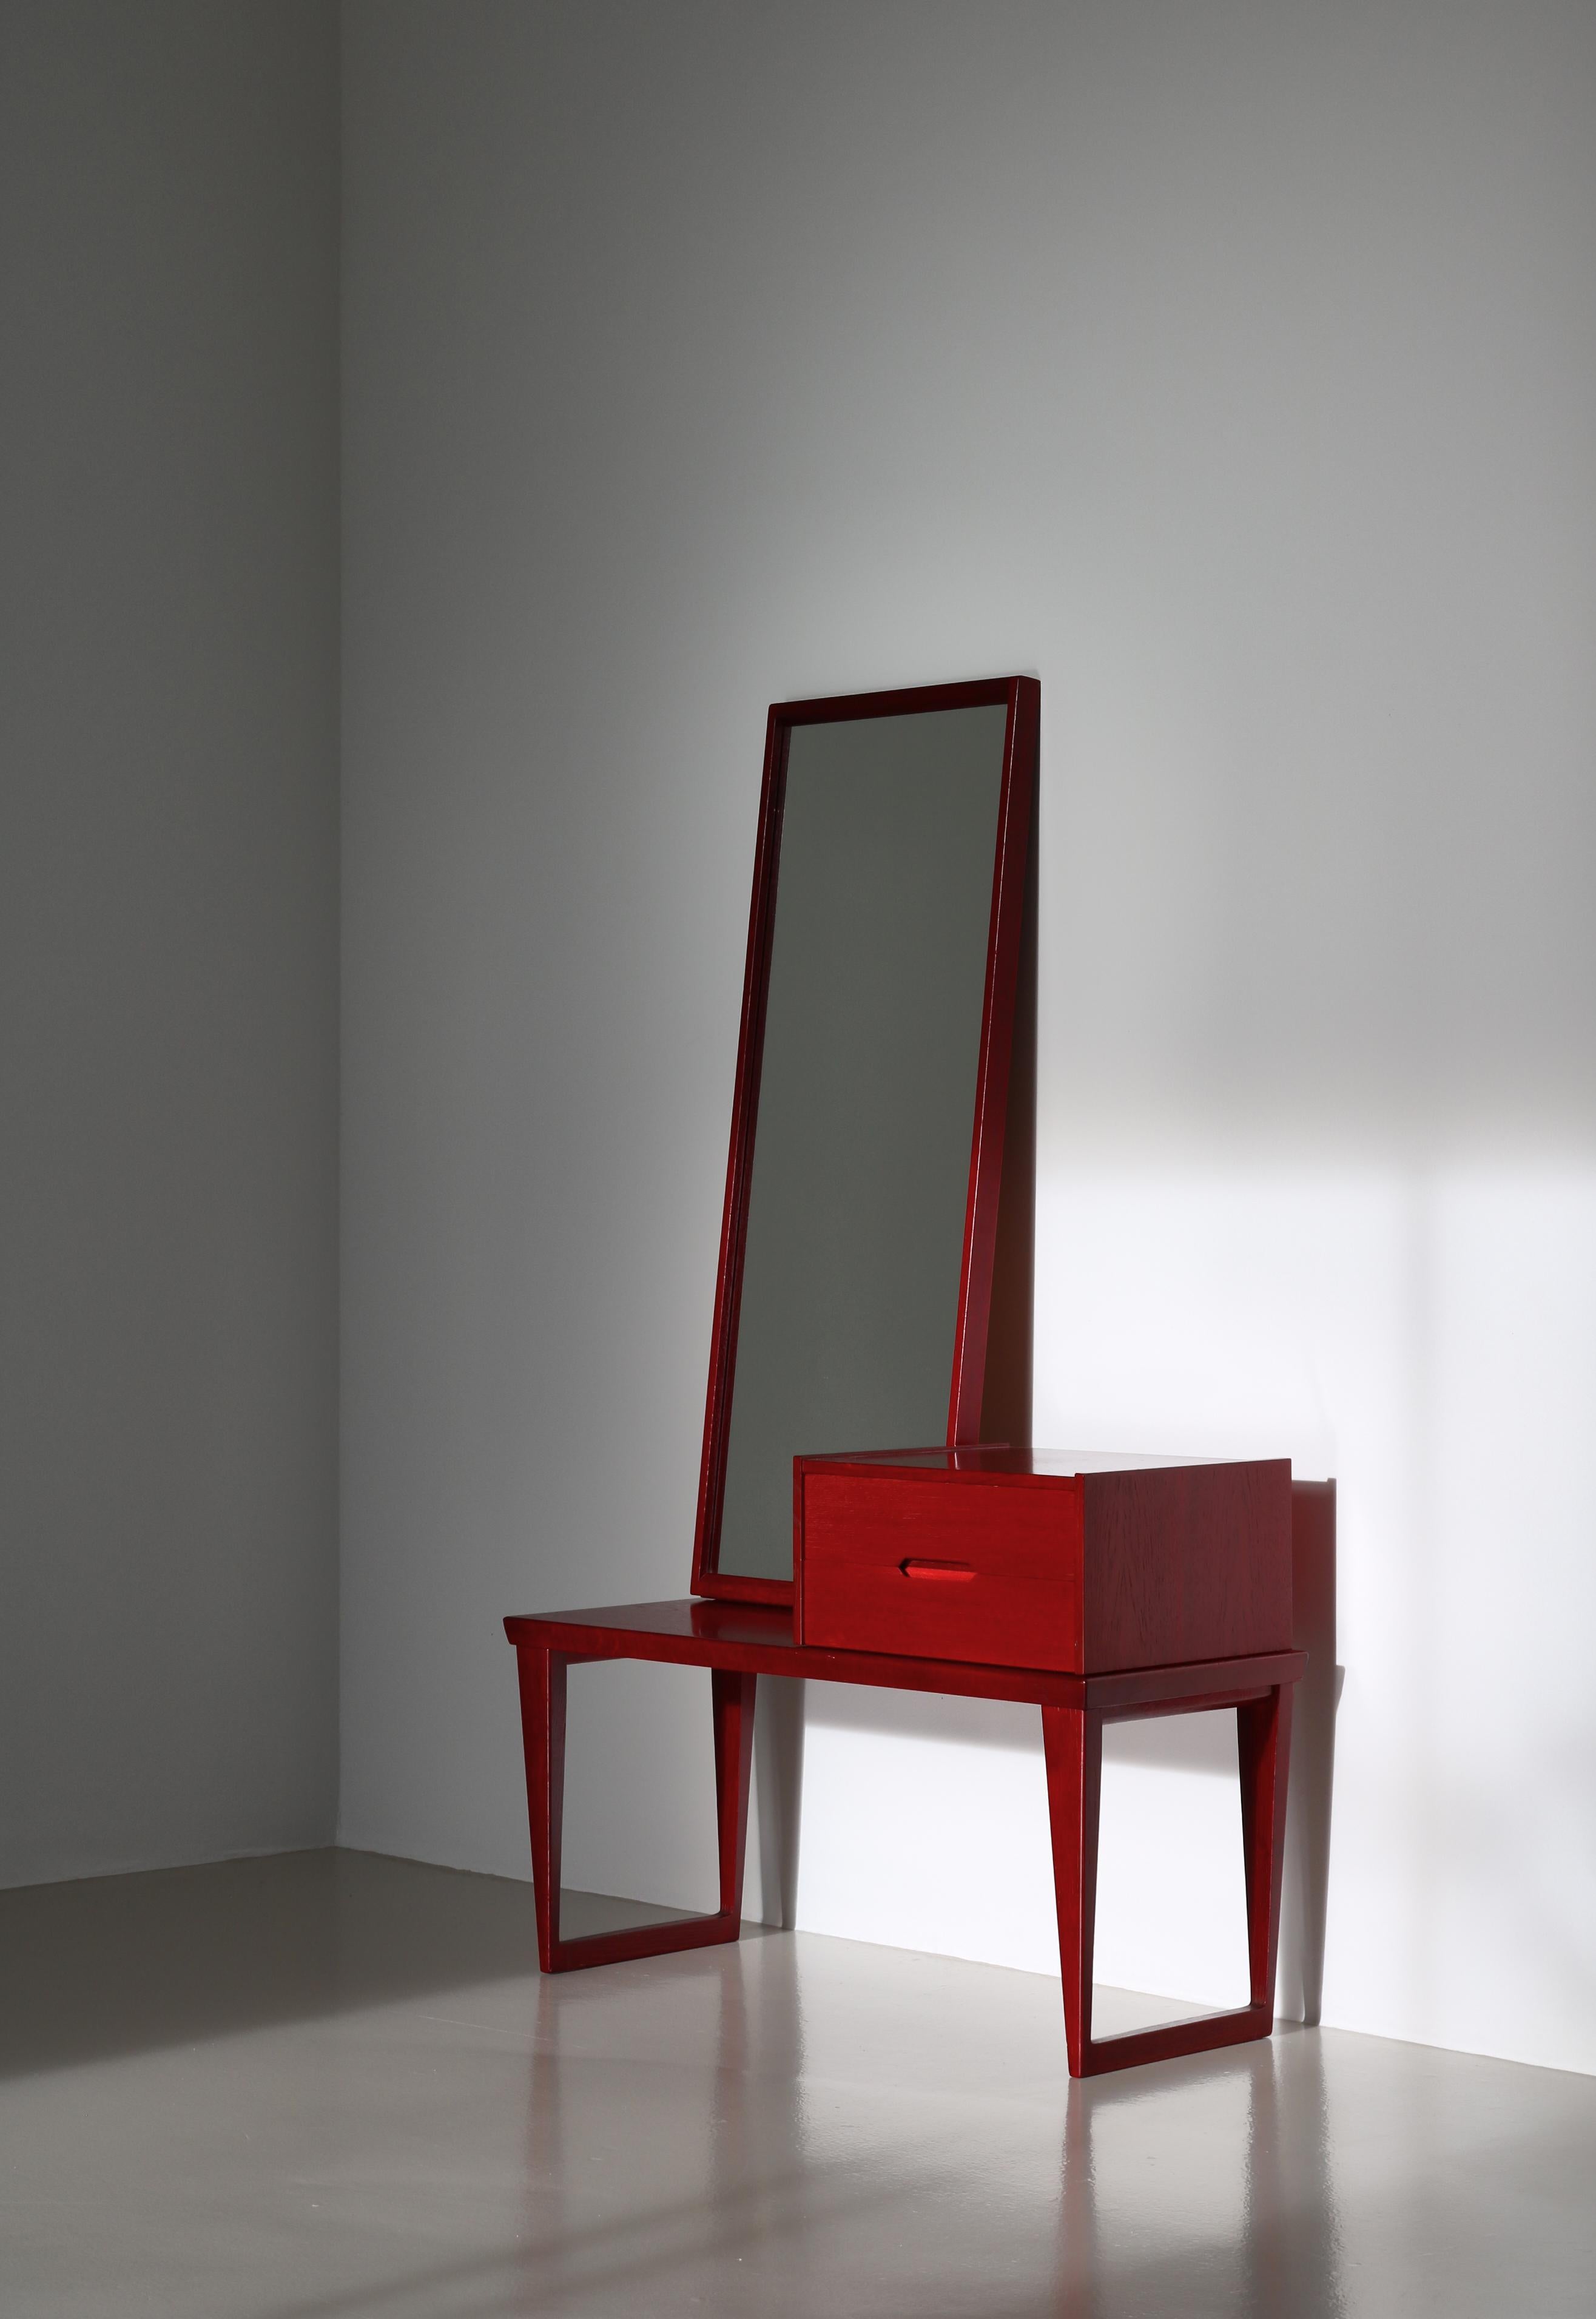 Seltenes dänisches Modernes Flurset bestehend aus einer Bank, einem Spiegel und einer kleinen Kommode, alle entworfen von Kai Kristiansen in den 1960er Jahren... Dieses Exemplar ist aus rot gebeizter Eiche gefertigt und sehr selten zu sehen. Er